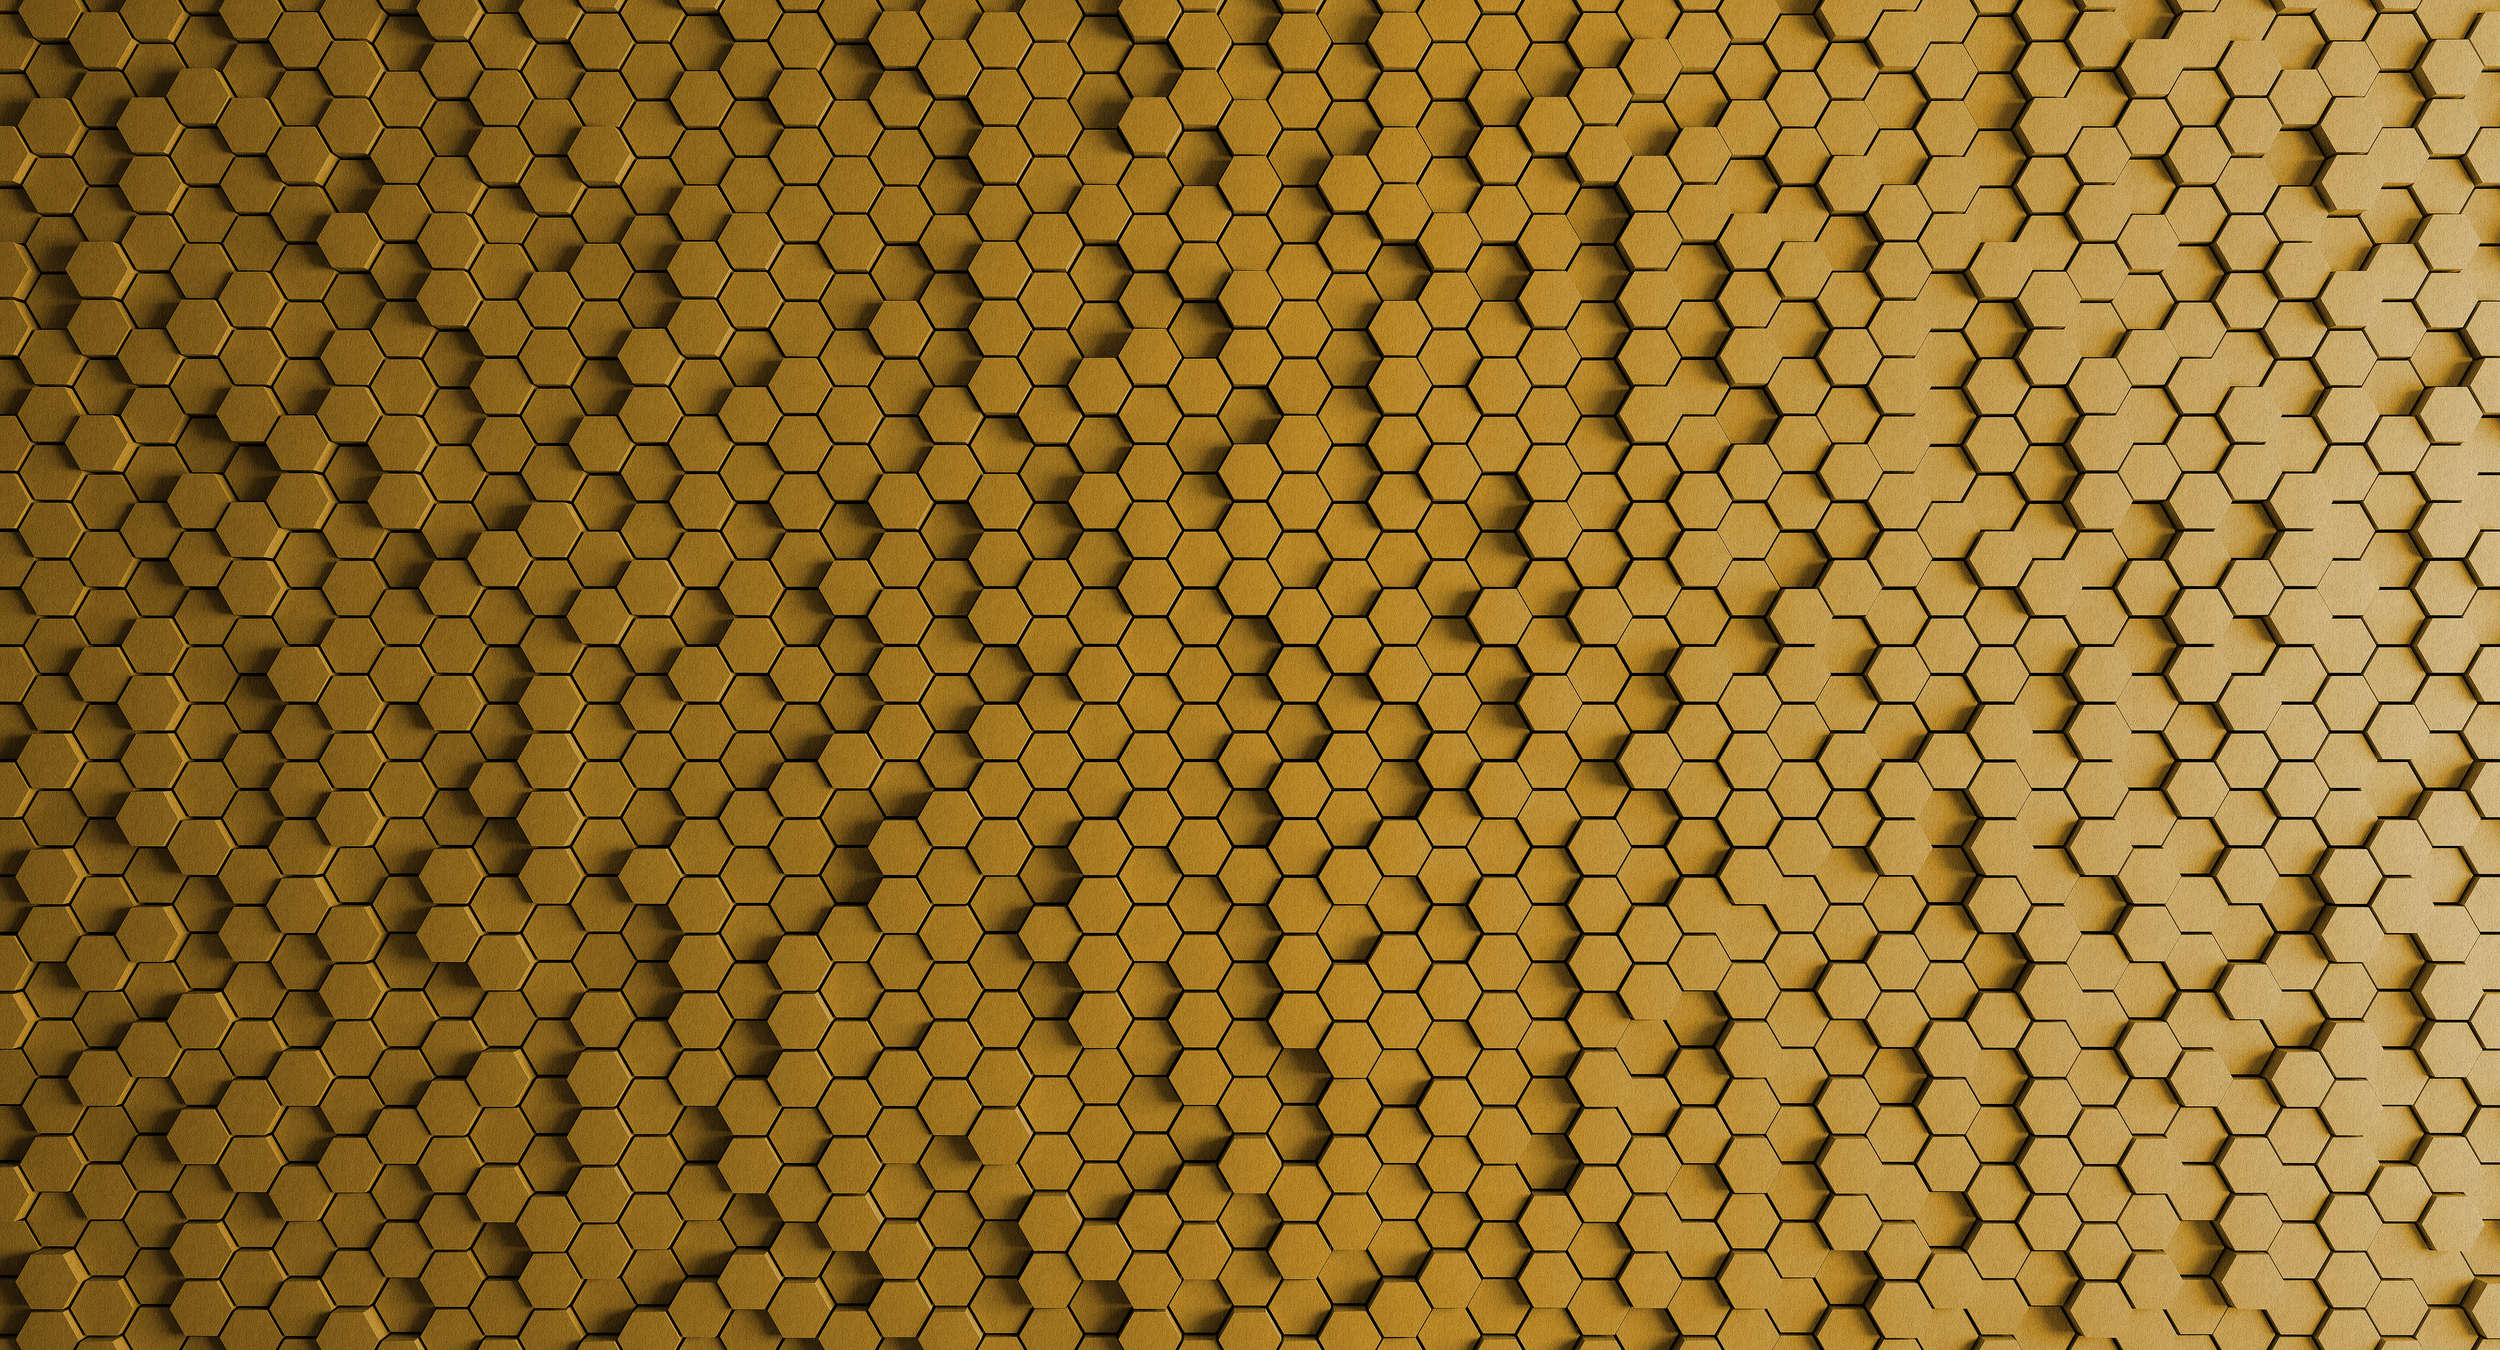             Panal 1 - Papel pintado 3D con diseño de panal amarillo en estructura de fieltro - Amarillo, Negro | Liso mate
        